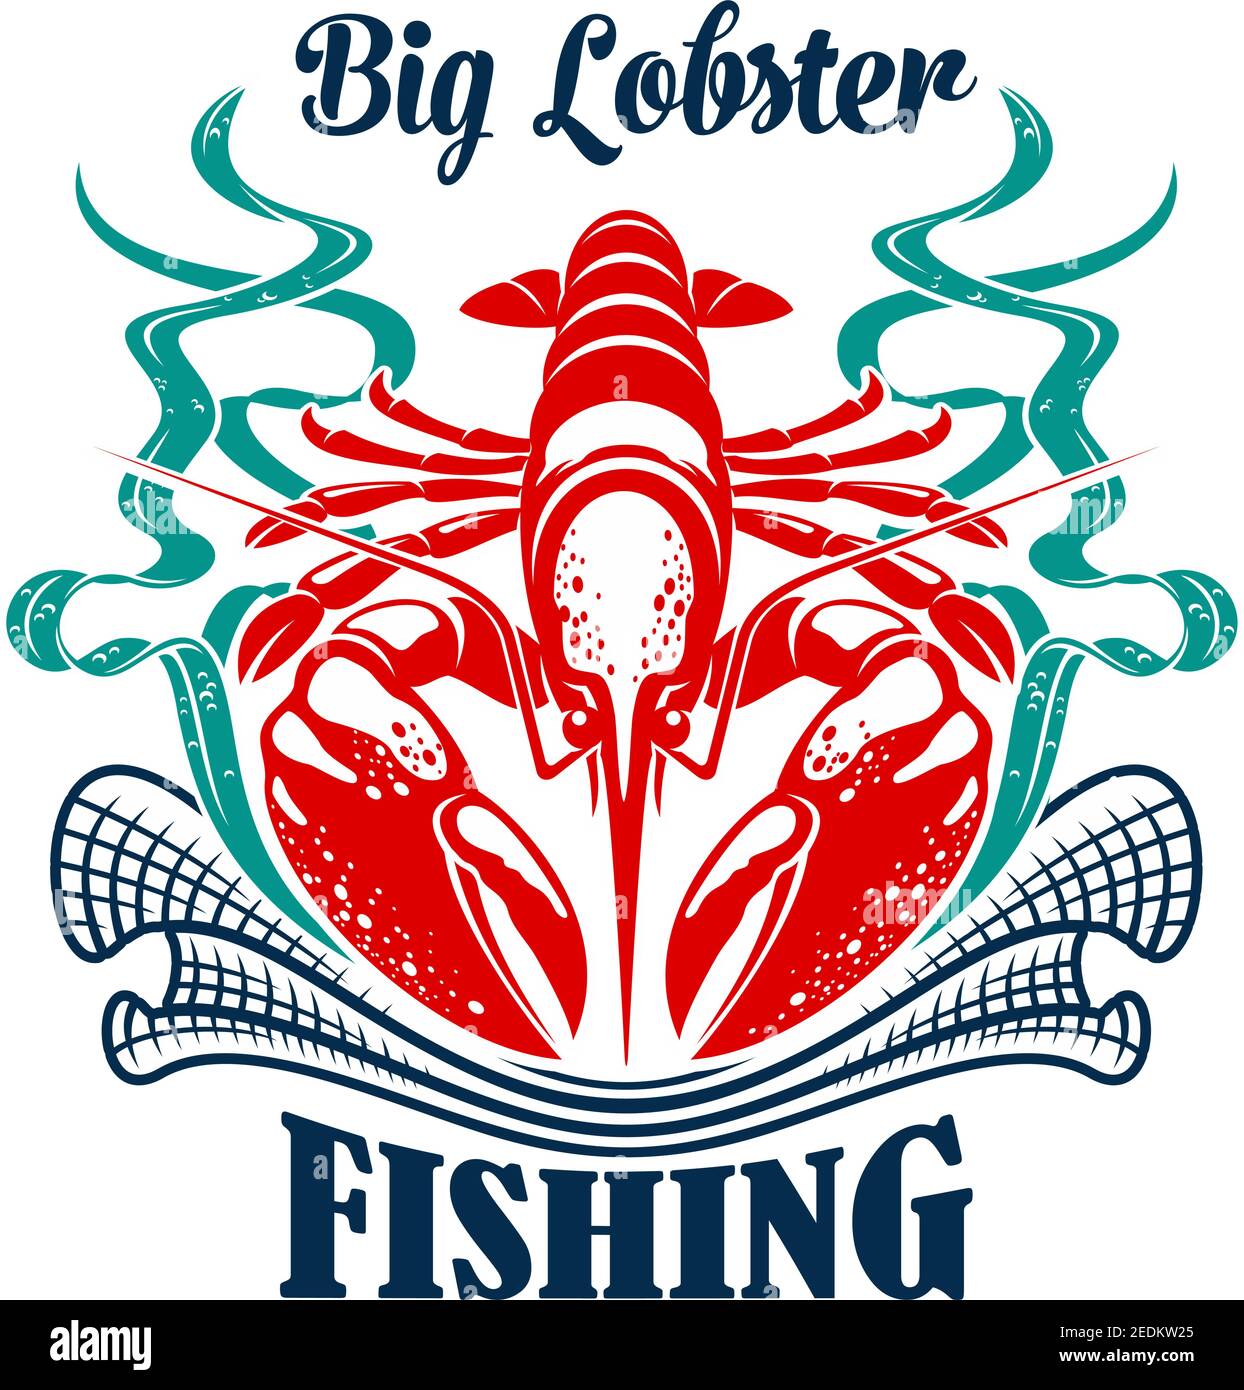 Angelikone des großen Ozeanhummer mit Fischernetz oder Fischteier und Algen. Fischereiindustrie Emblem oder Abzeichen für Freizeit Sport fishi Stock Vektor